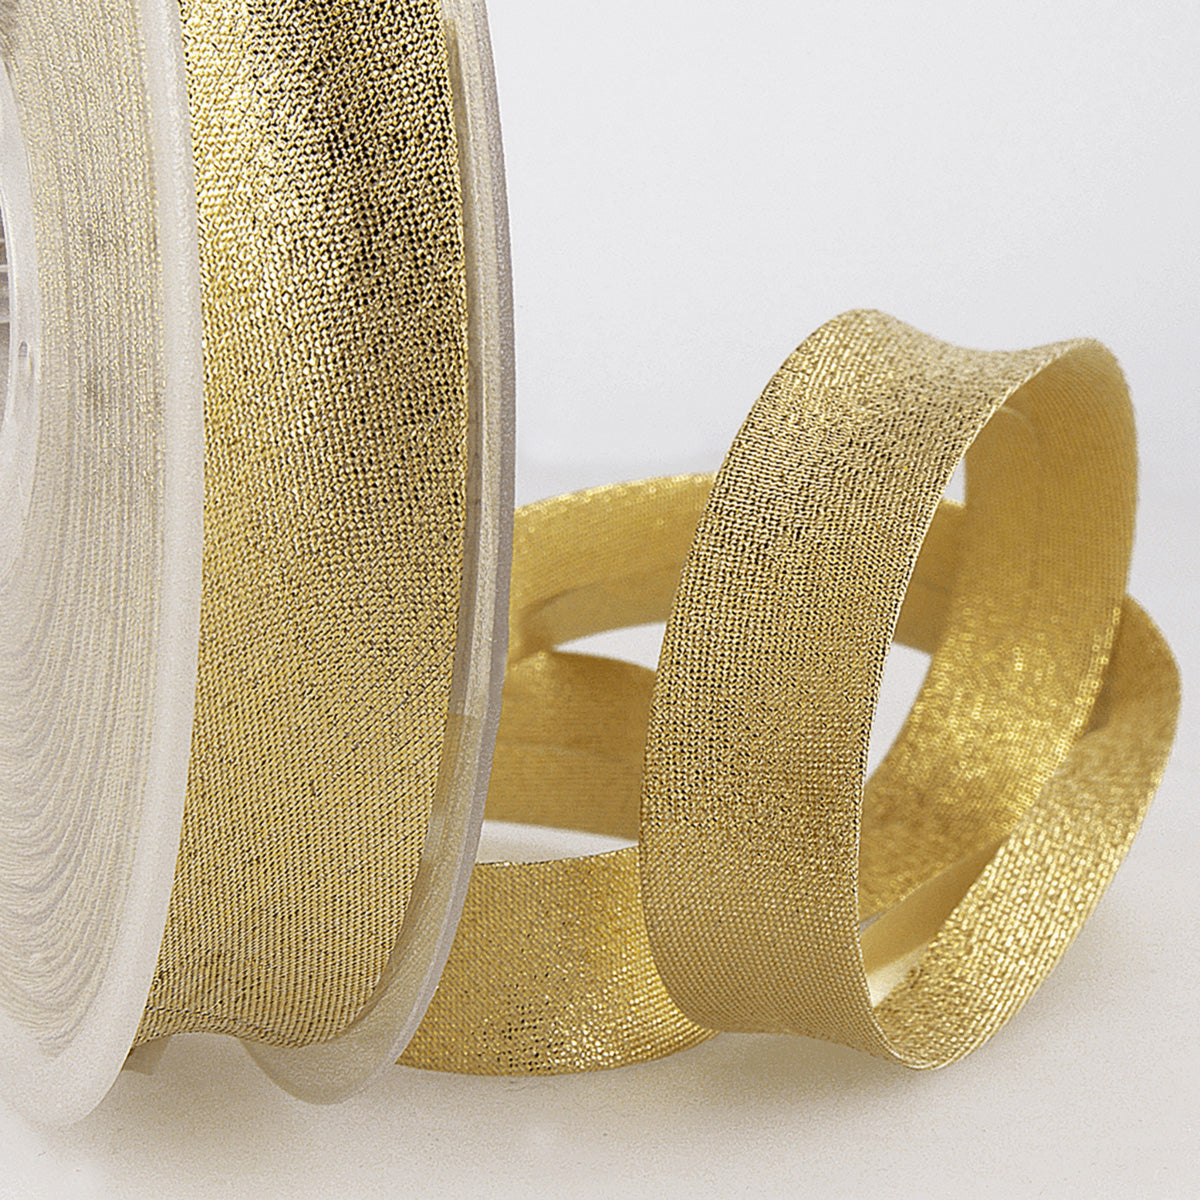 20mm Gold Metallic Bias Binding Tape